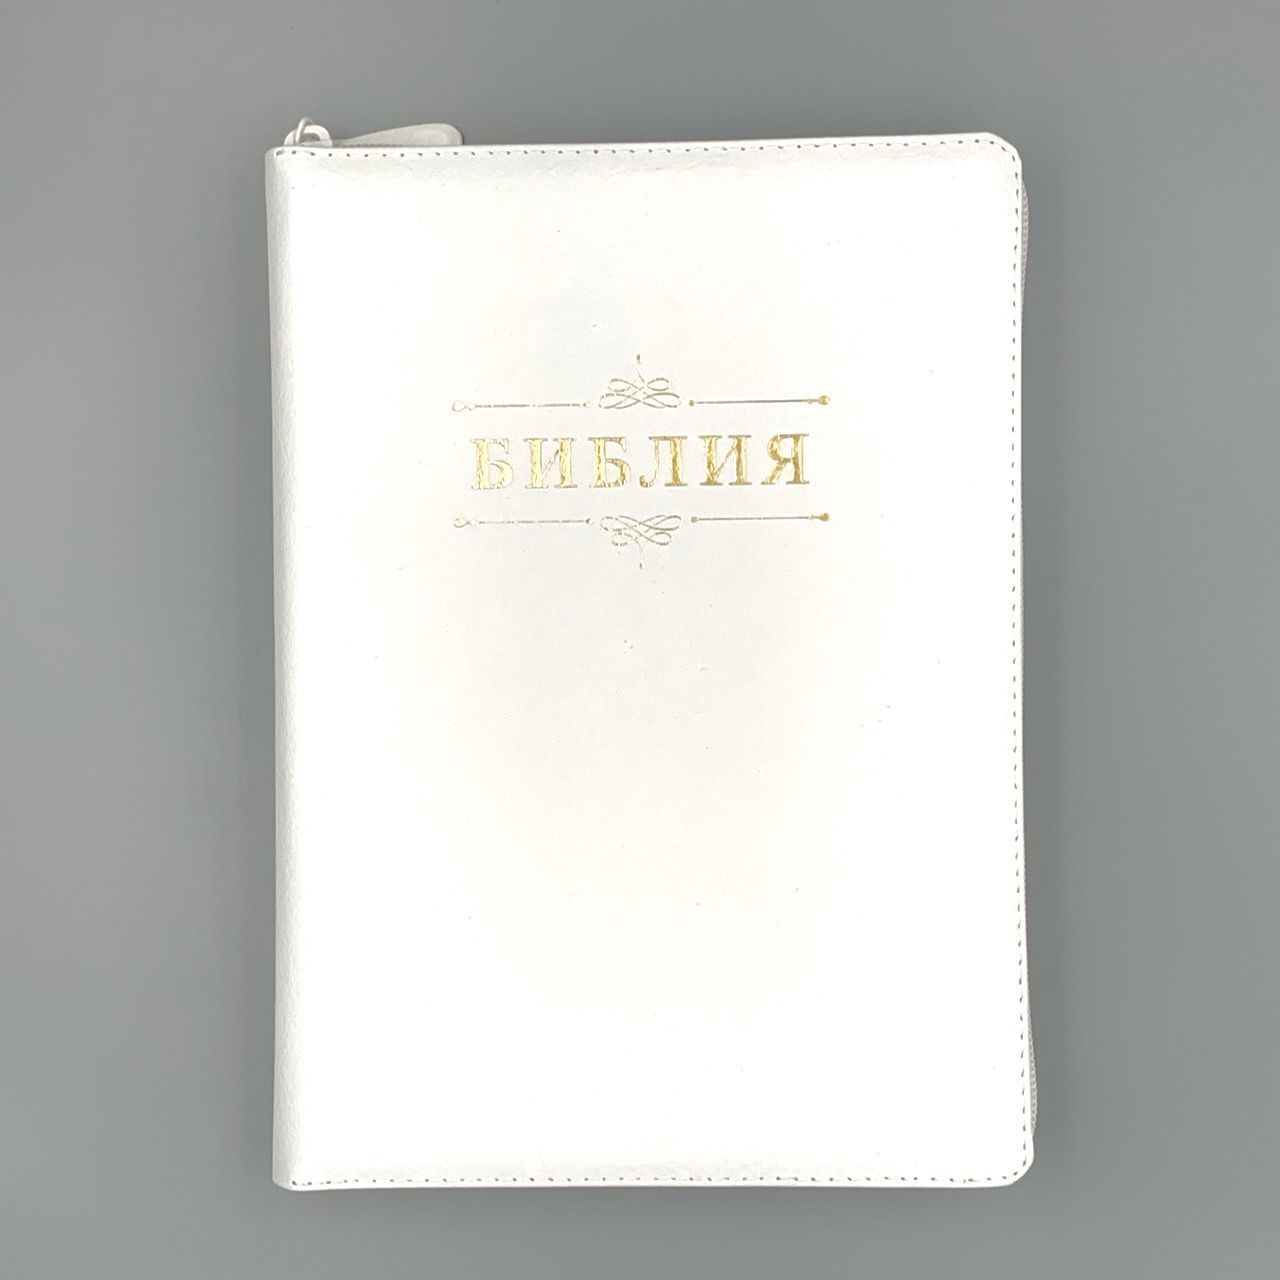 Библия 076zti код 23076-11, дизайн "слово Библия", кожаный переплет на молнии с индексами, цвет белый пятнистый, размер 180x243 мм